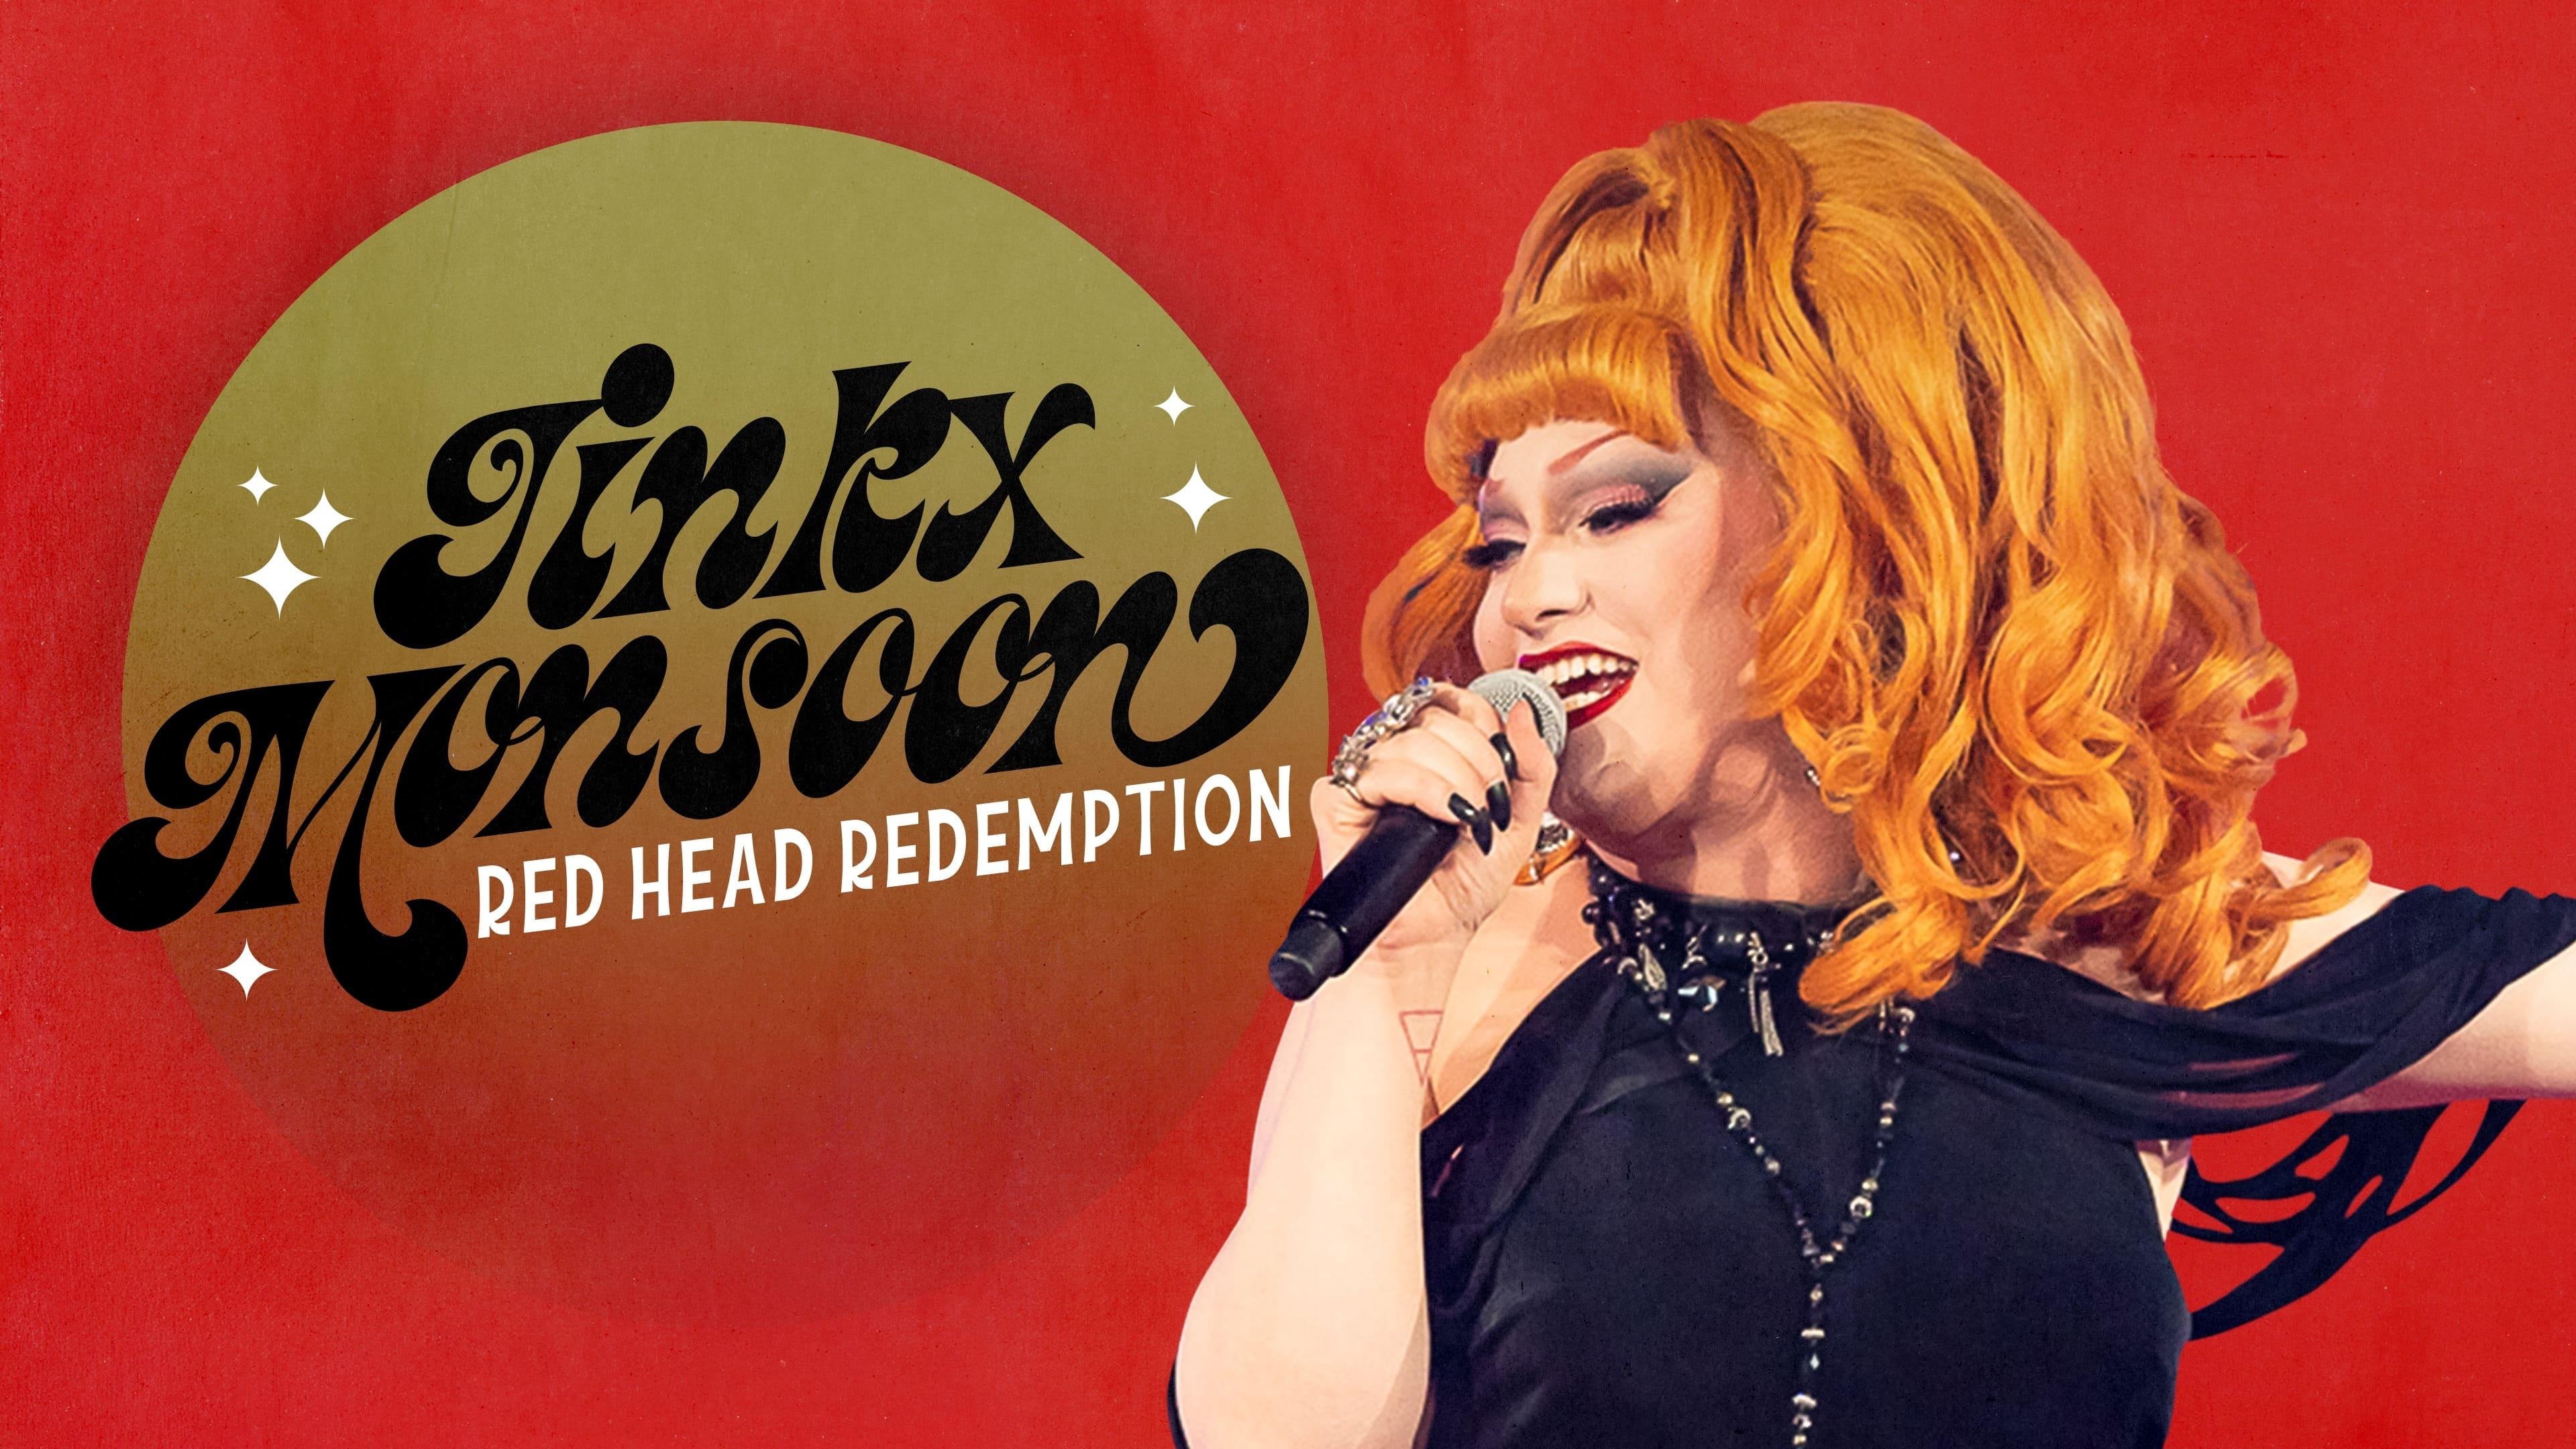 Jinkx Monsoon: Red Head Redemption backdrop